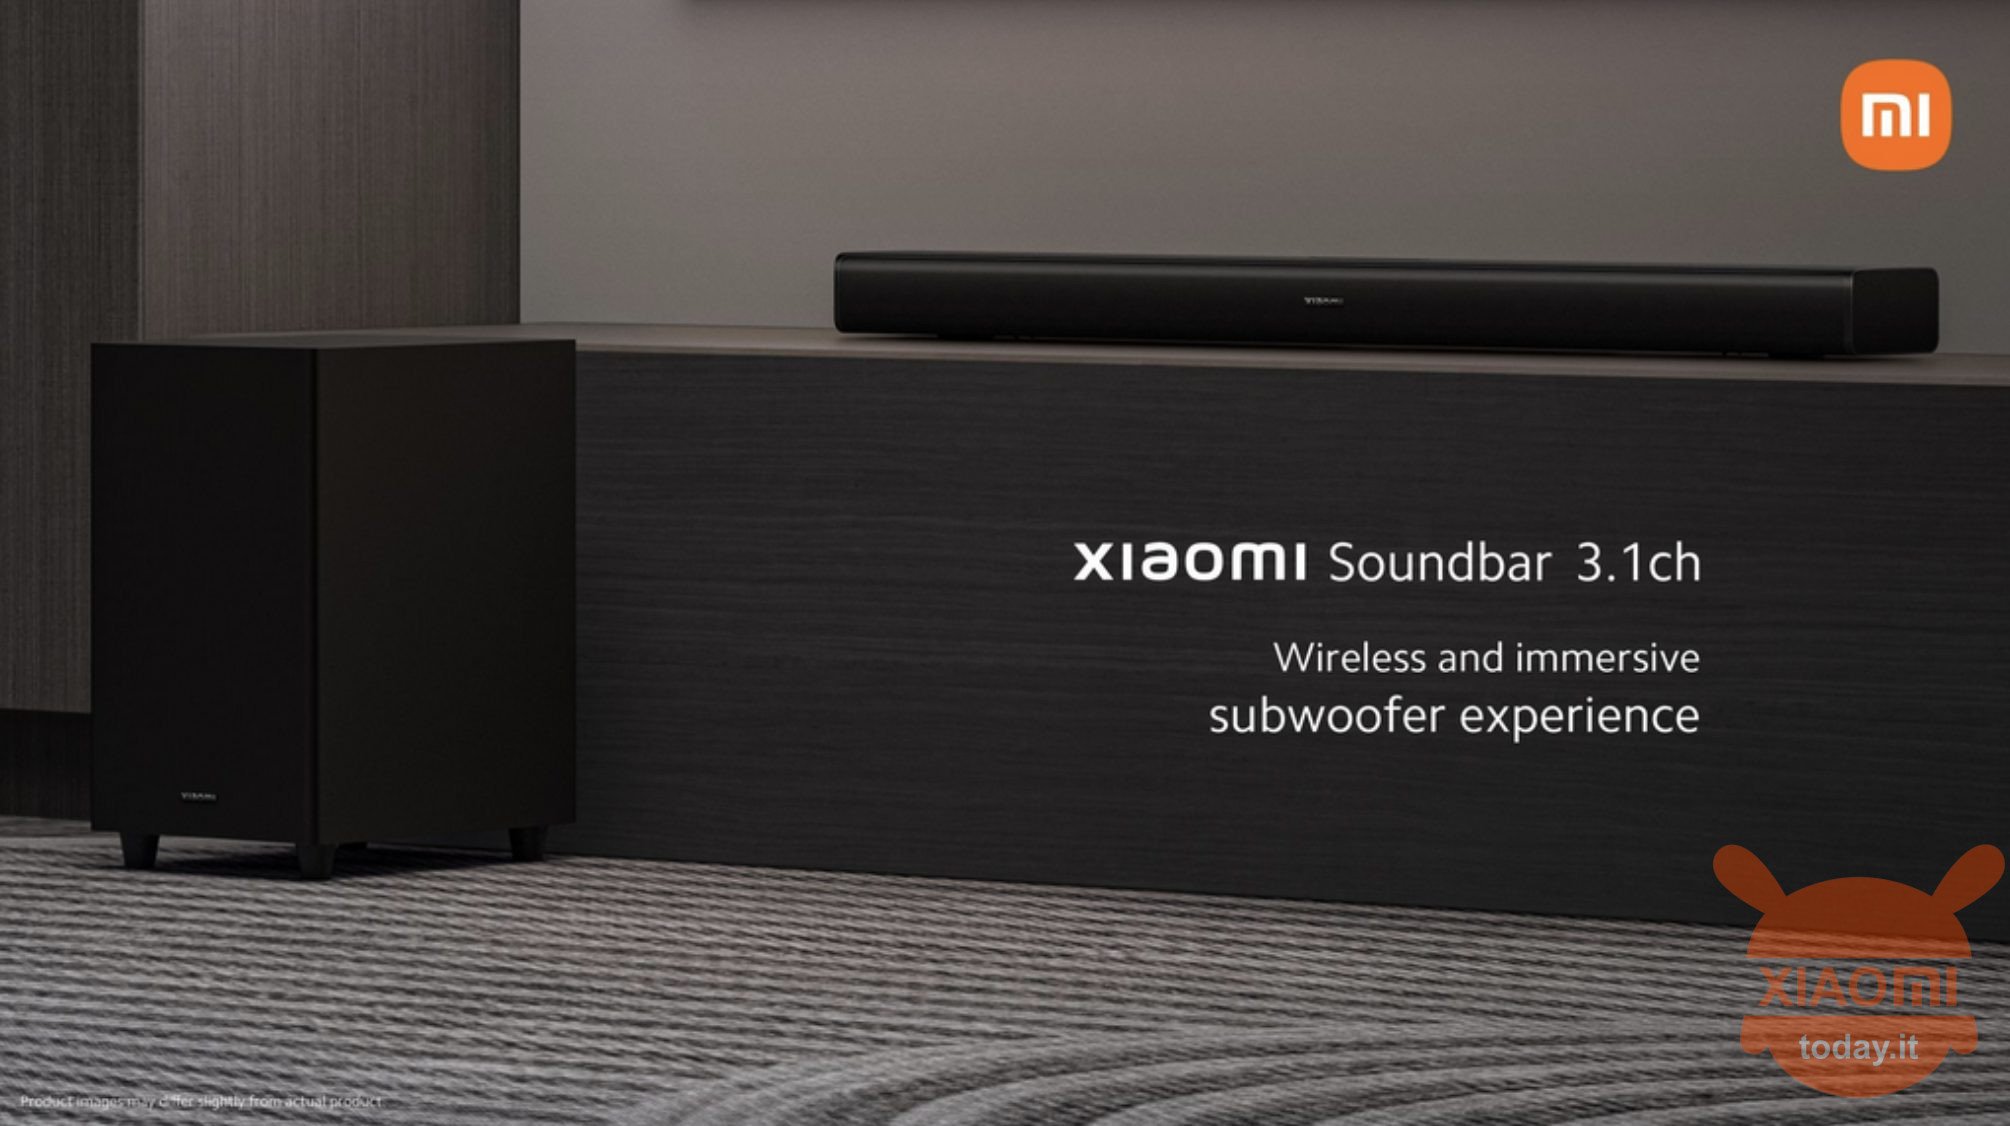 xiaomi soundbar 3.1ch official: especificaciones y lanzamiento de la primera barra de sonido de xiaomi en el mercado global